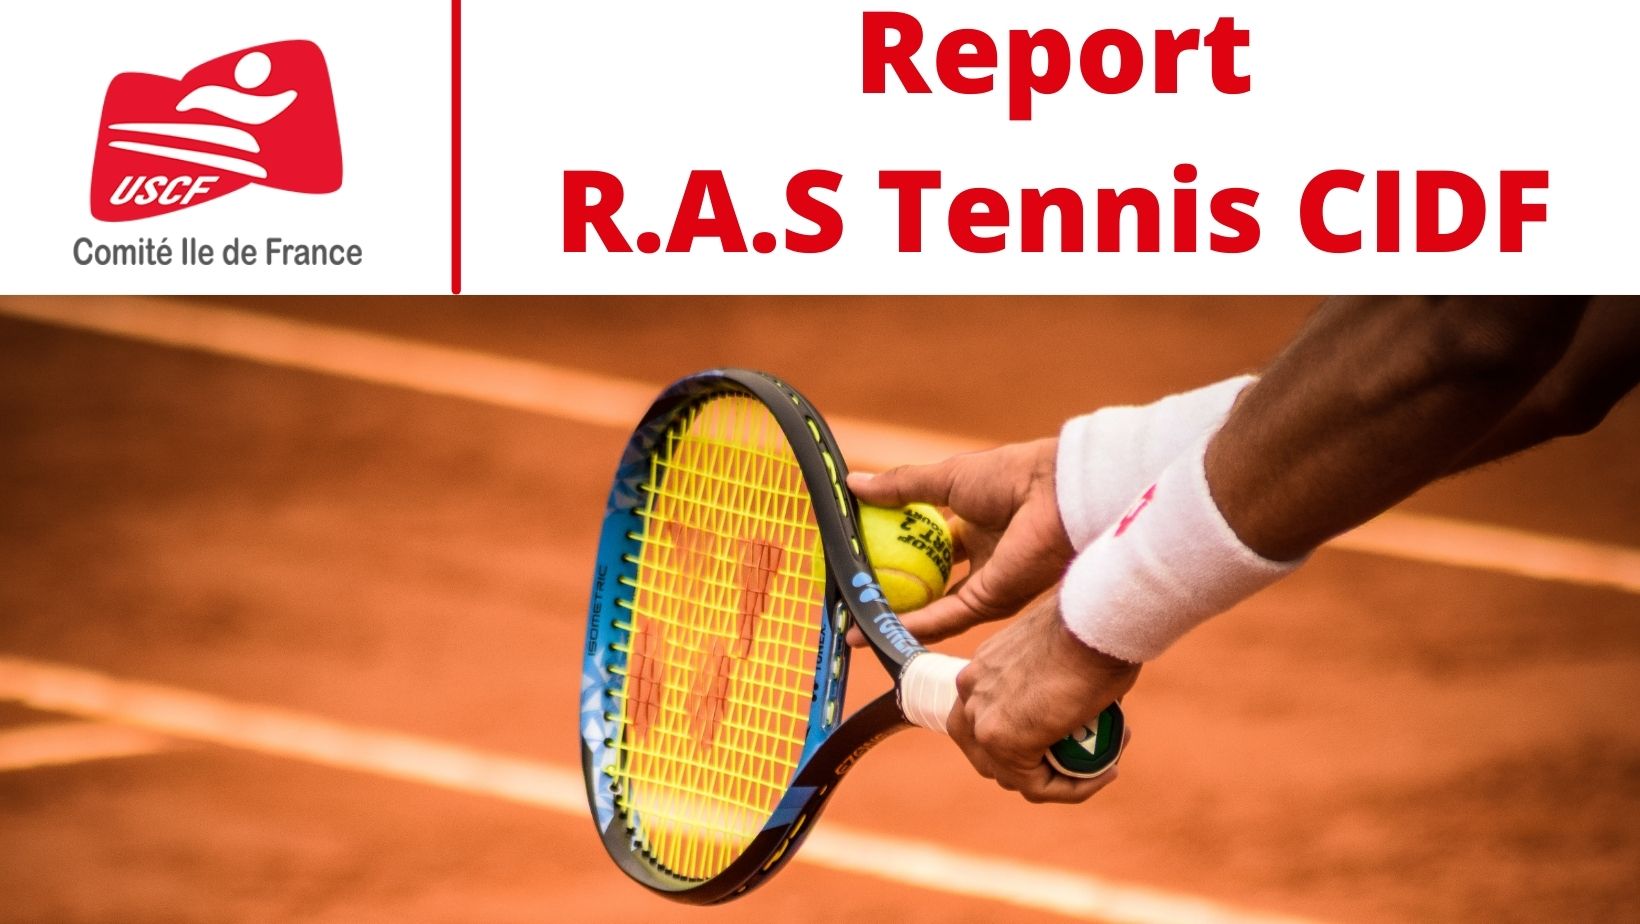 La R.A.S de Tennis du CIDF est reportée